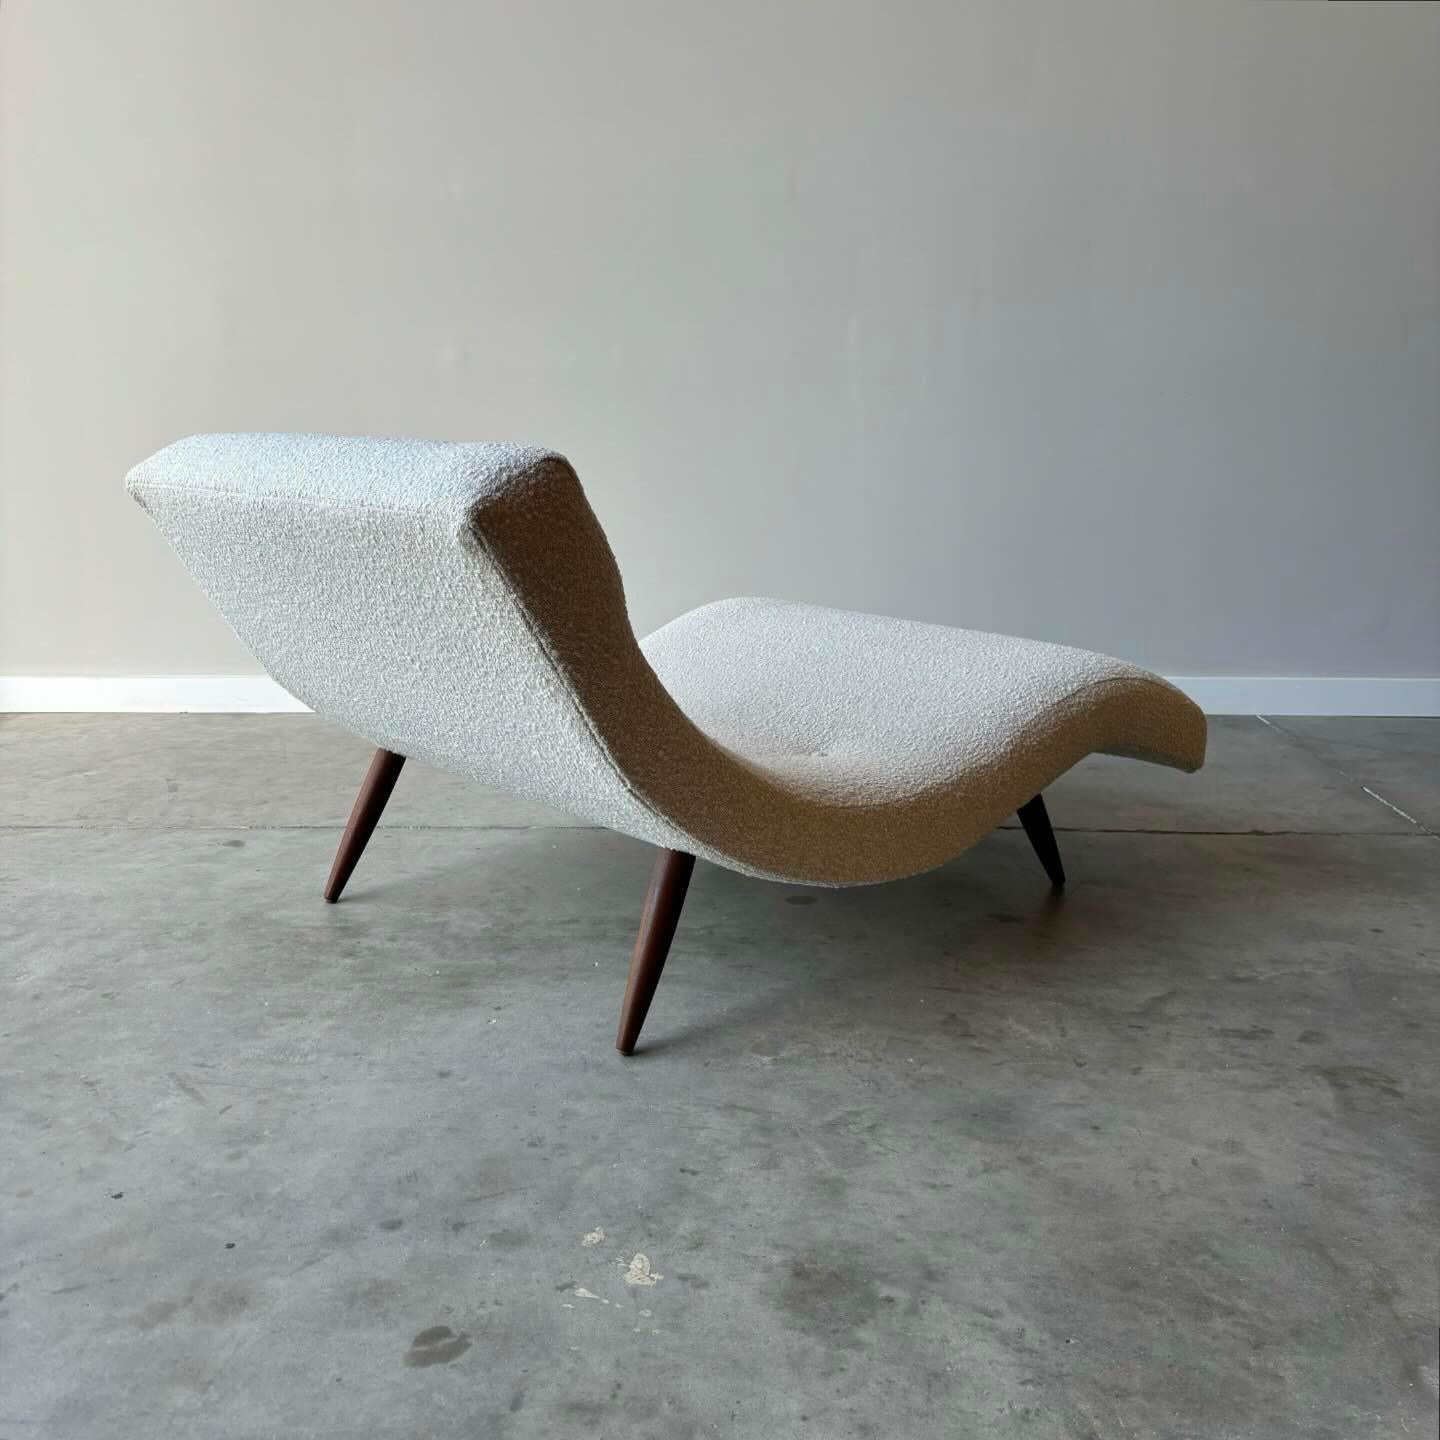 Magnifique chaise ondulée moderne du milieu du siècle, conçue par Adrian Pearsall pour Craft Associates, modèle 108-C. 

Salon aux lignes courbes et élégantes, nouvellement revêtu d'un fin tissu bouclé ivoire. Il s'agit non seulement d'une belle